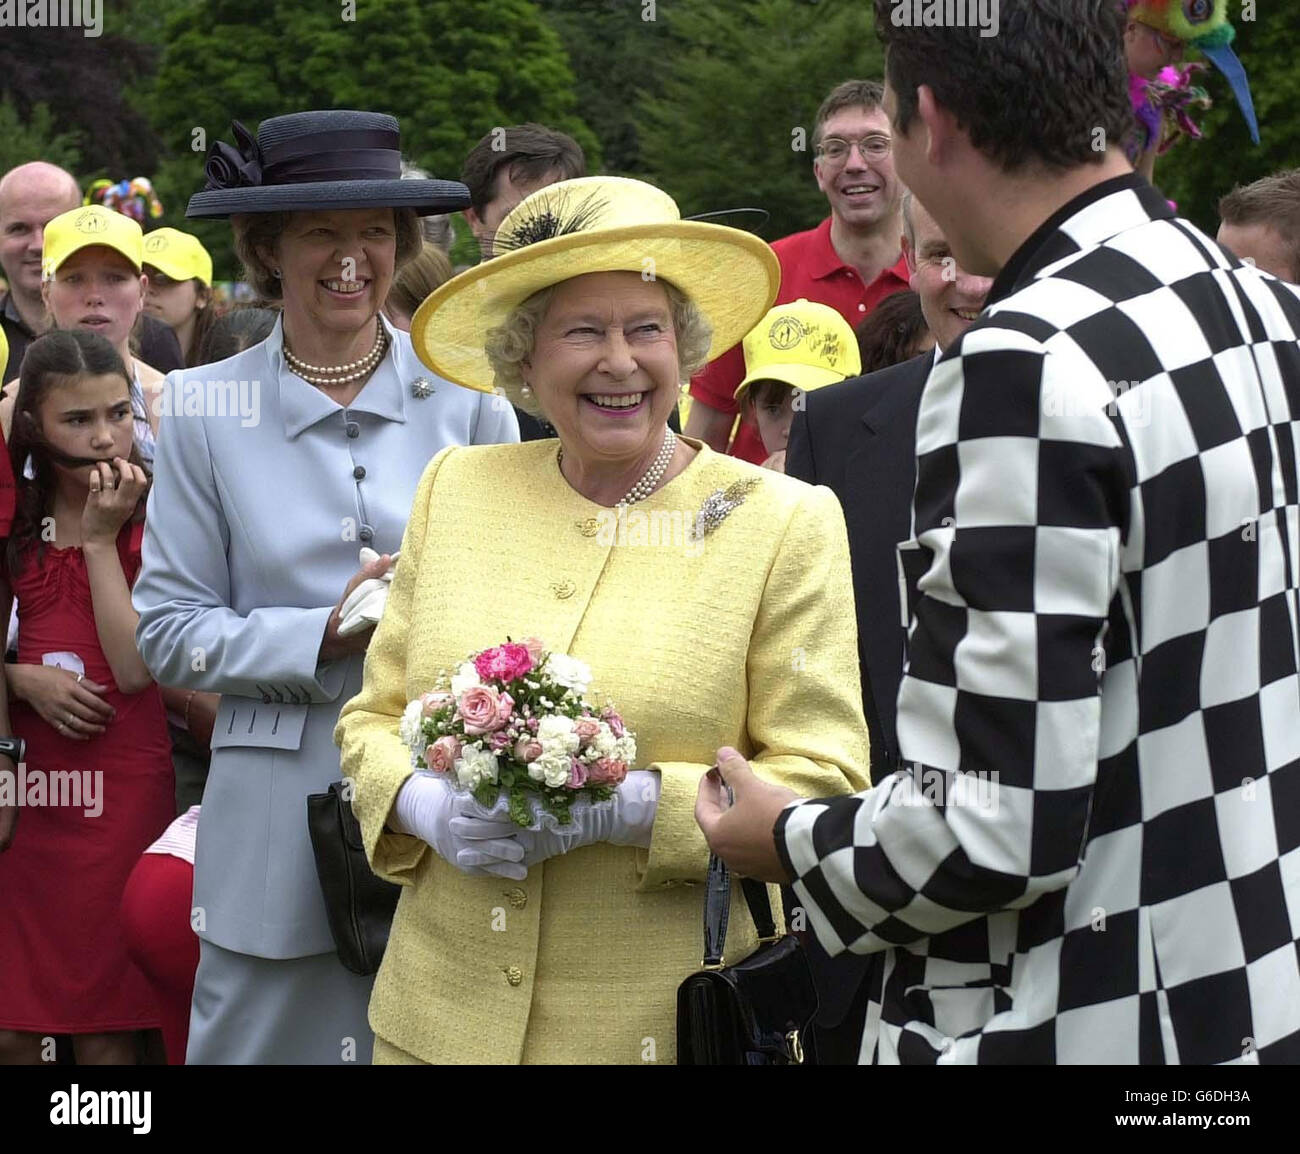 Königin Elizabeth II. Wird von dem Zauberer Michael J Fitch auf einer Party im Buckingham Palace in London zum Gedenken an den 50. Jahrestag ihrer Krönung ein Zaubertrick gezeigt. Stockfoto